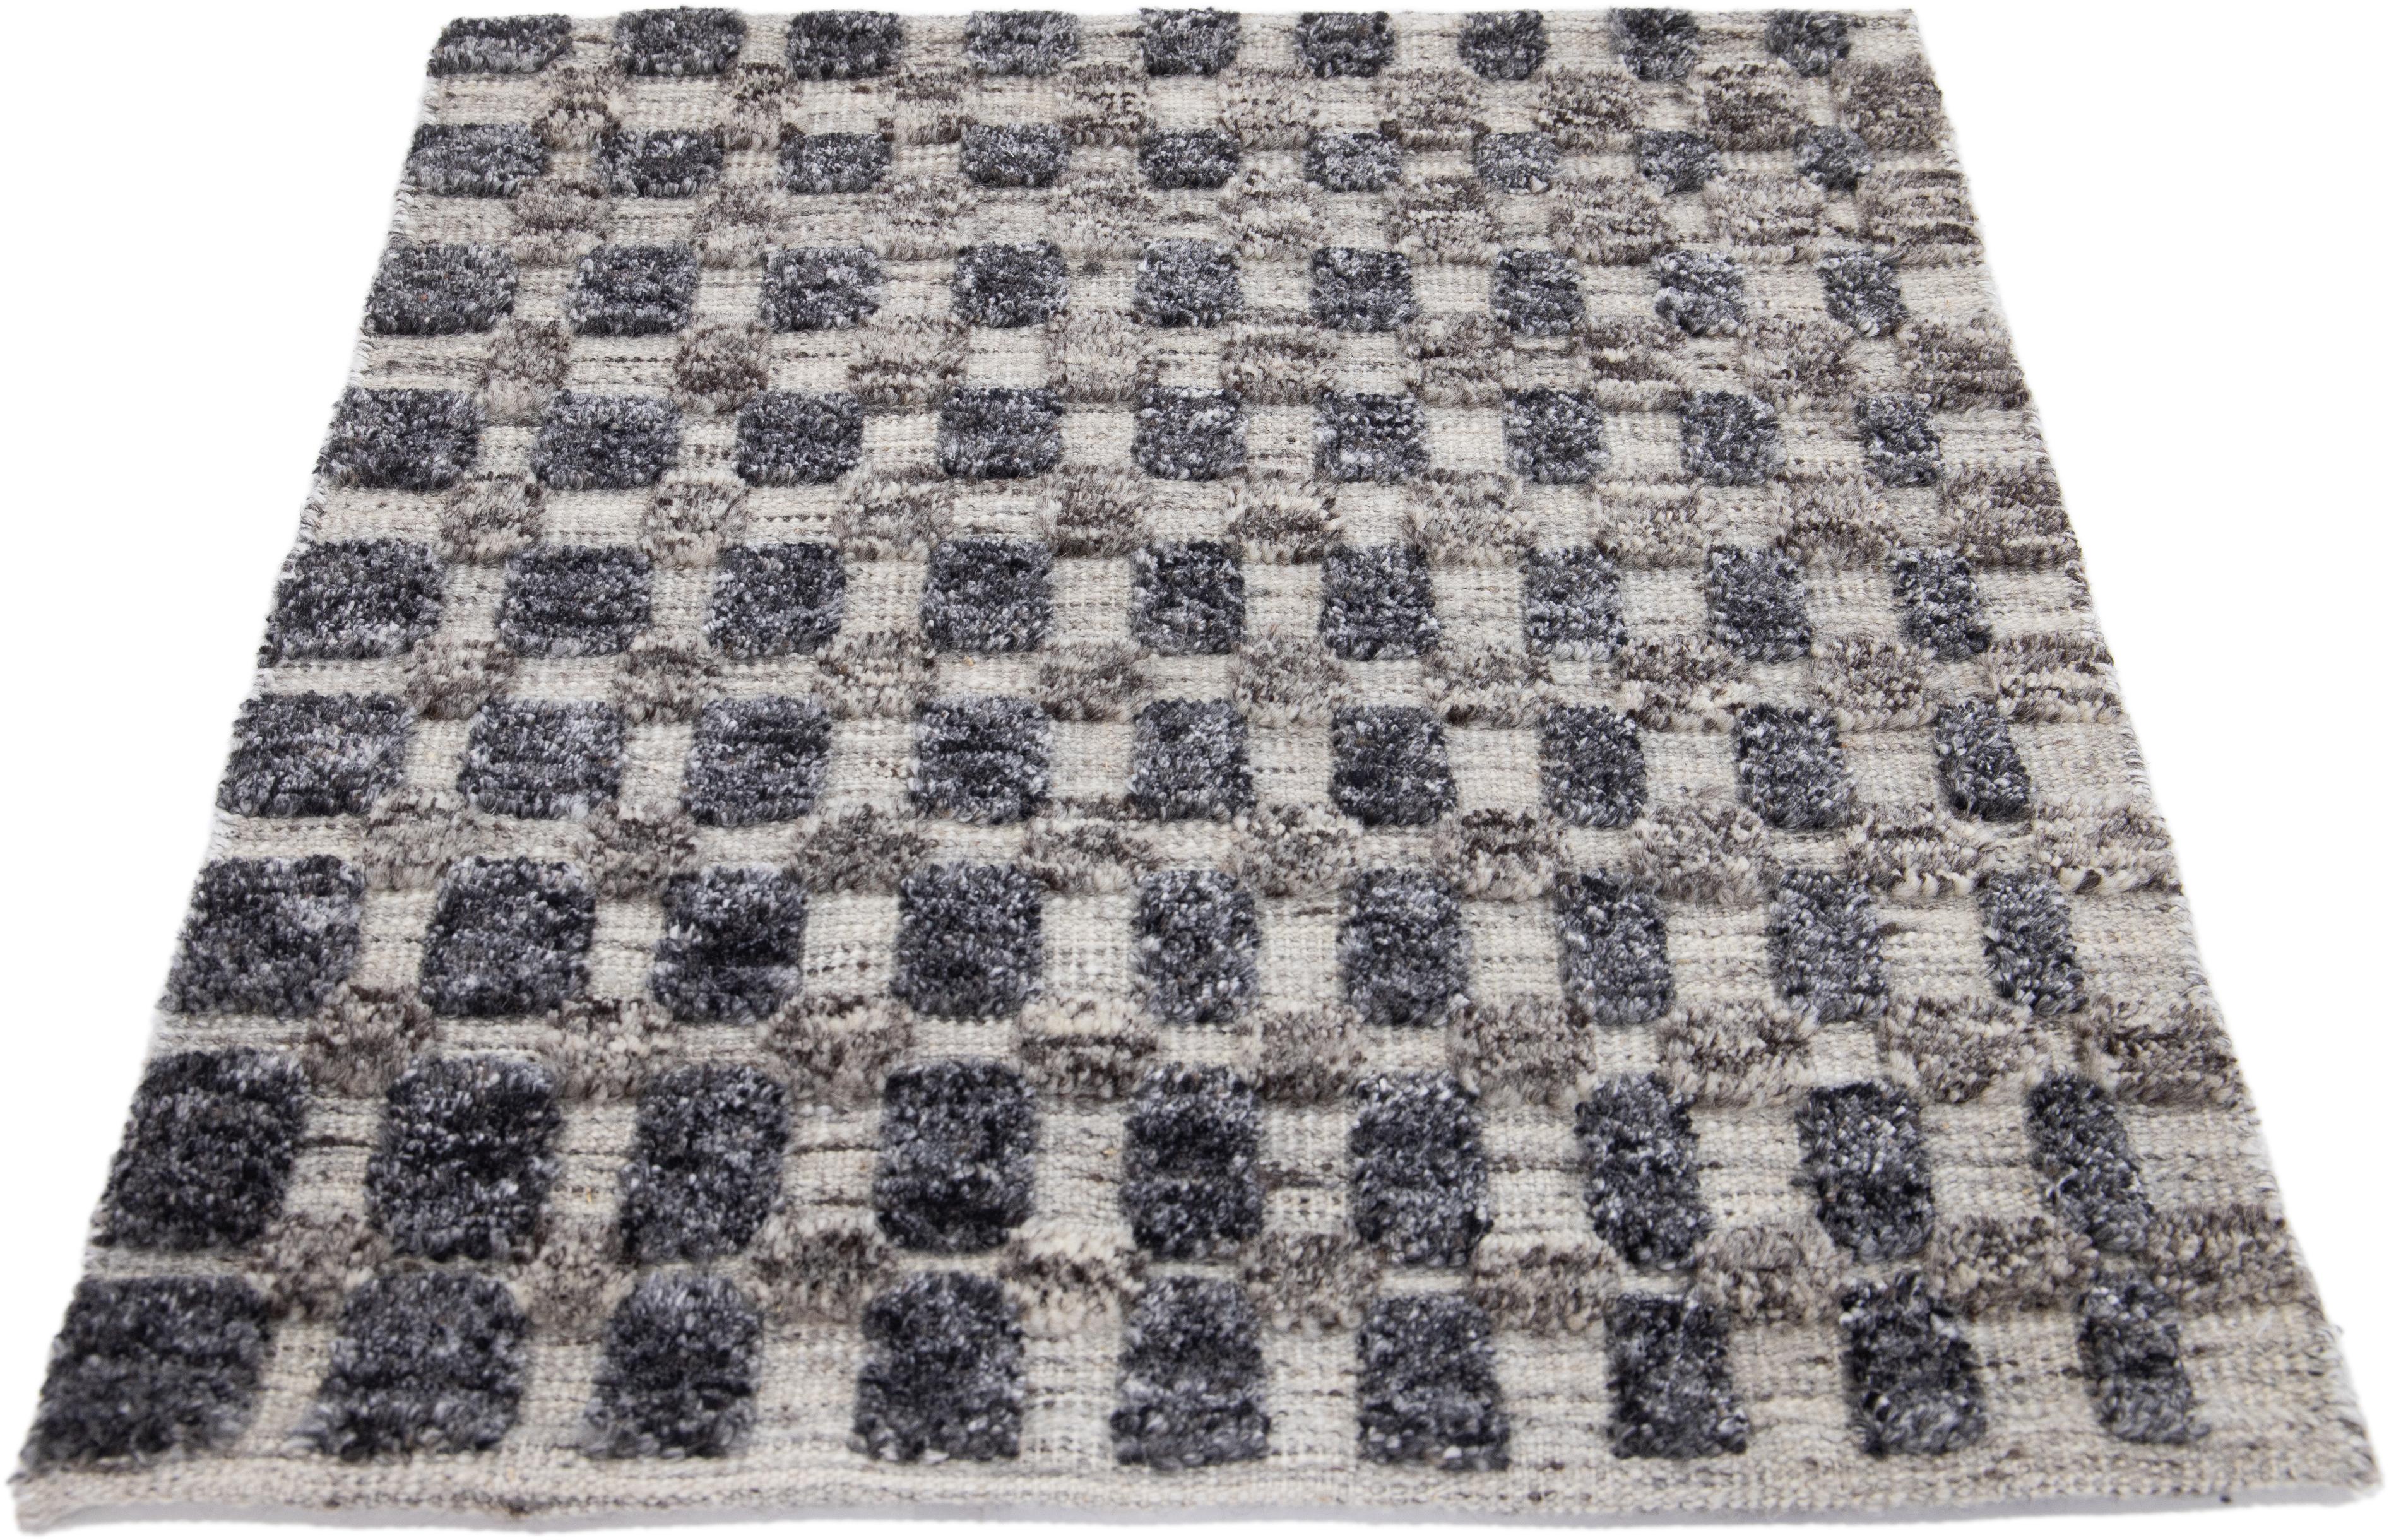 Moderner marokkanischer Teppich aus neuseeländischer Wolle von Apadana. Kundenspezifische Größen und Farben auf Bestellung. 

Material: Neuseeländische Wolle 
Techniken: Handgeknüpft
Stil: Marokkanisch 
Vorlaufzeit: Ca. 15-16 Wochen verfügbar